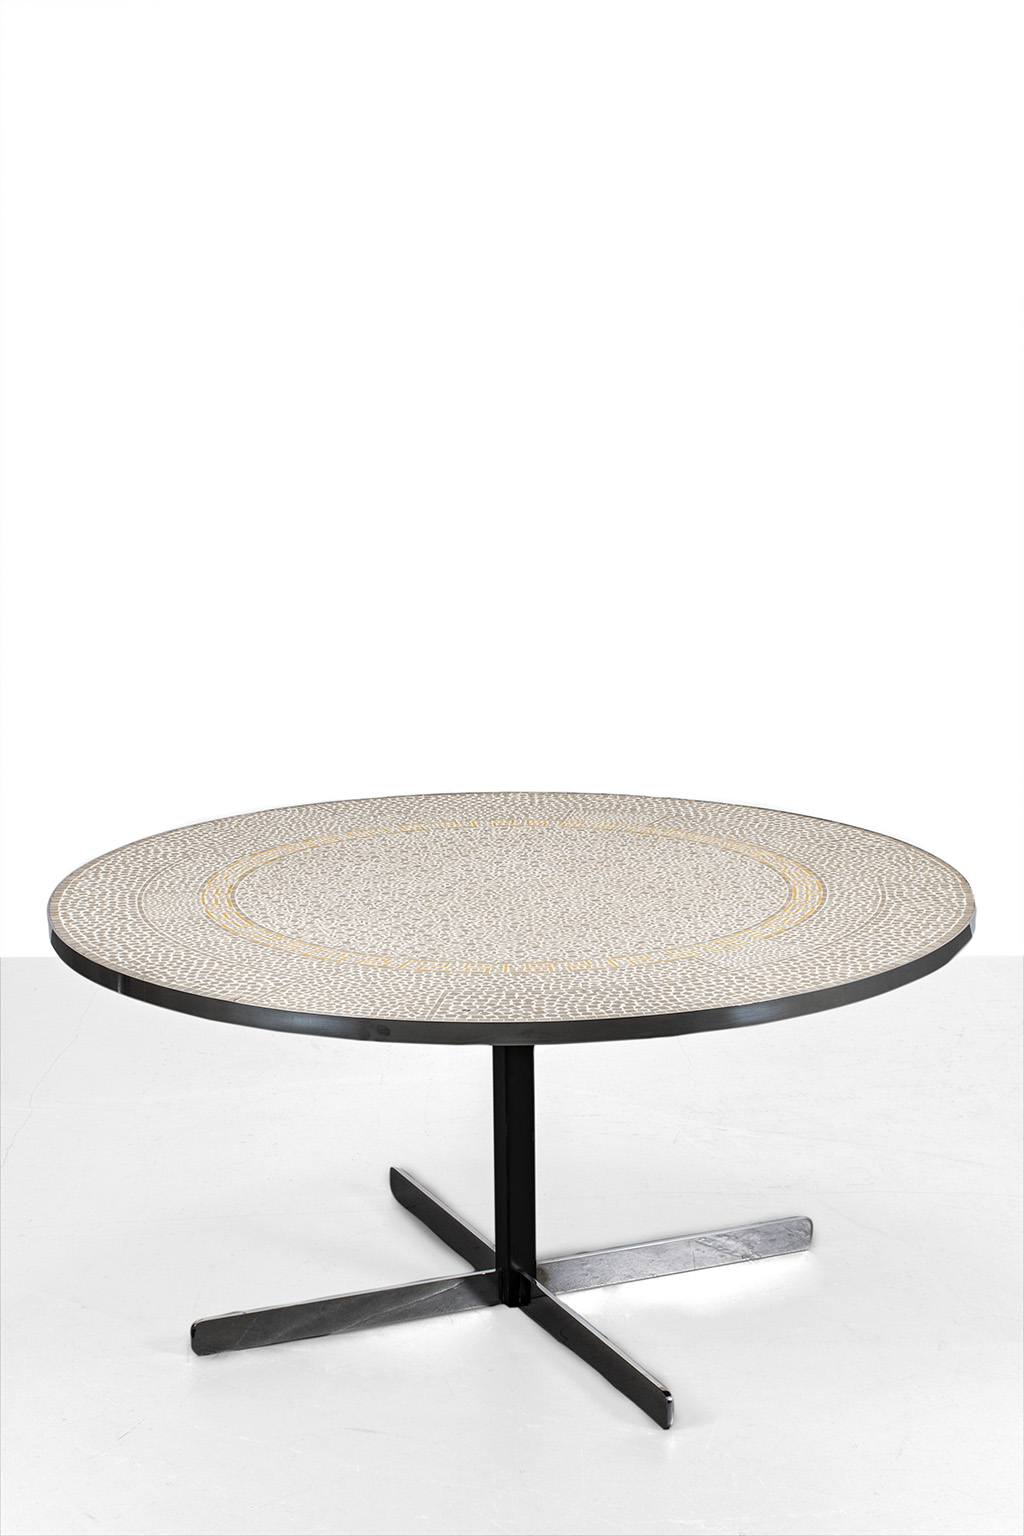 Elegant mosaic coffee table